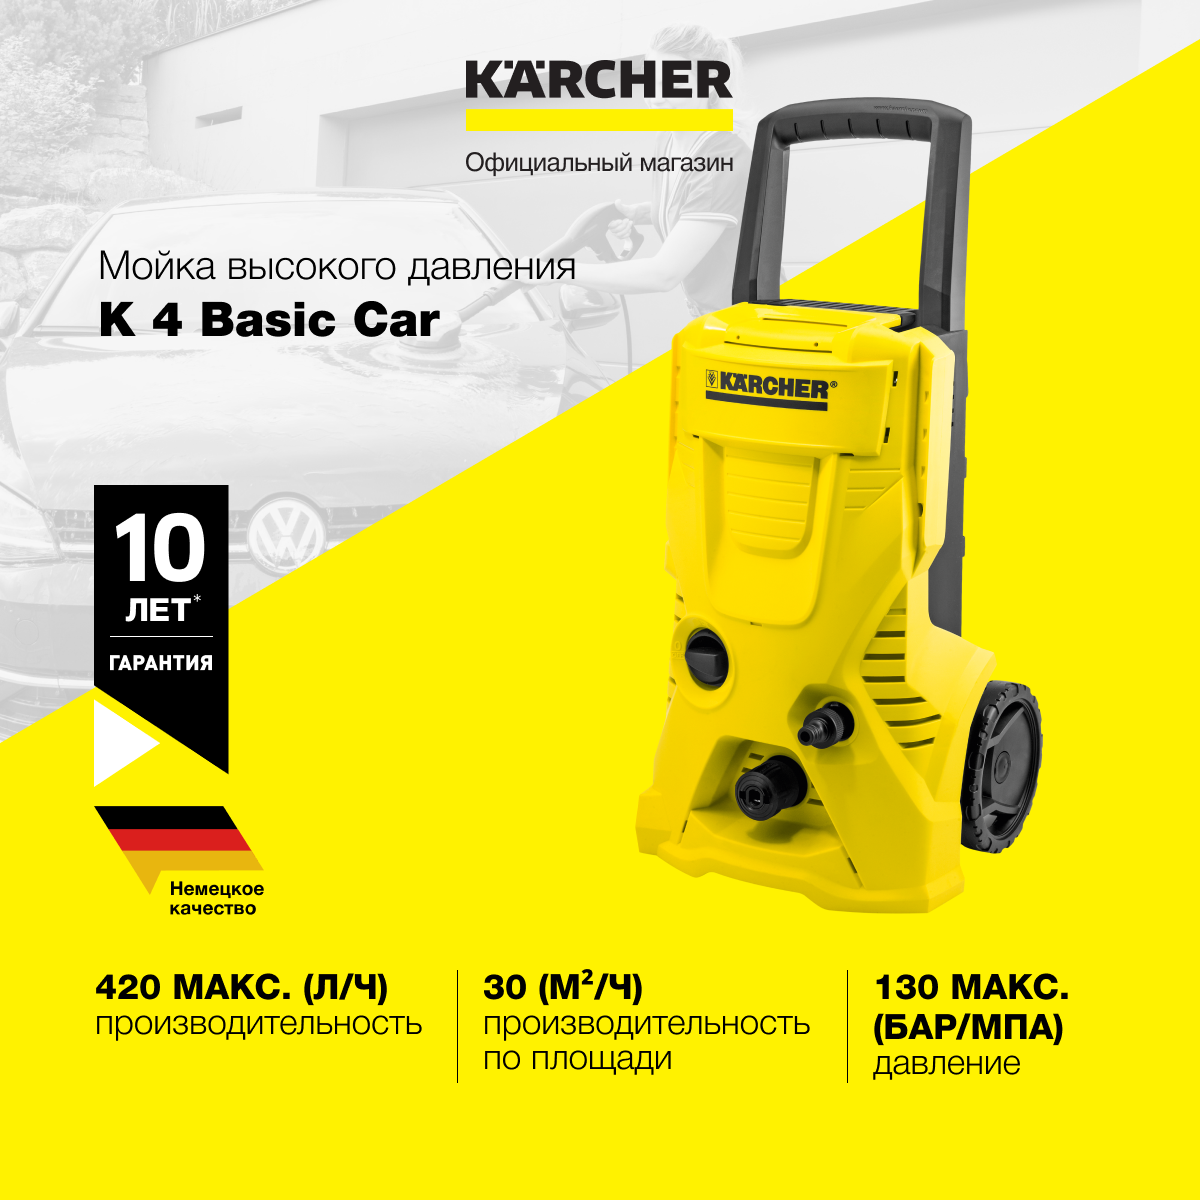 Мойка высокого давления Karcher K 4 Basic Car 1.180-083.0 встроенный фильтр для воды шланг длиной 6 м производительность 420 л/ч пистолет грязевая фреза щетка для мойки